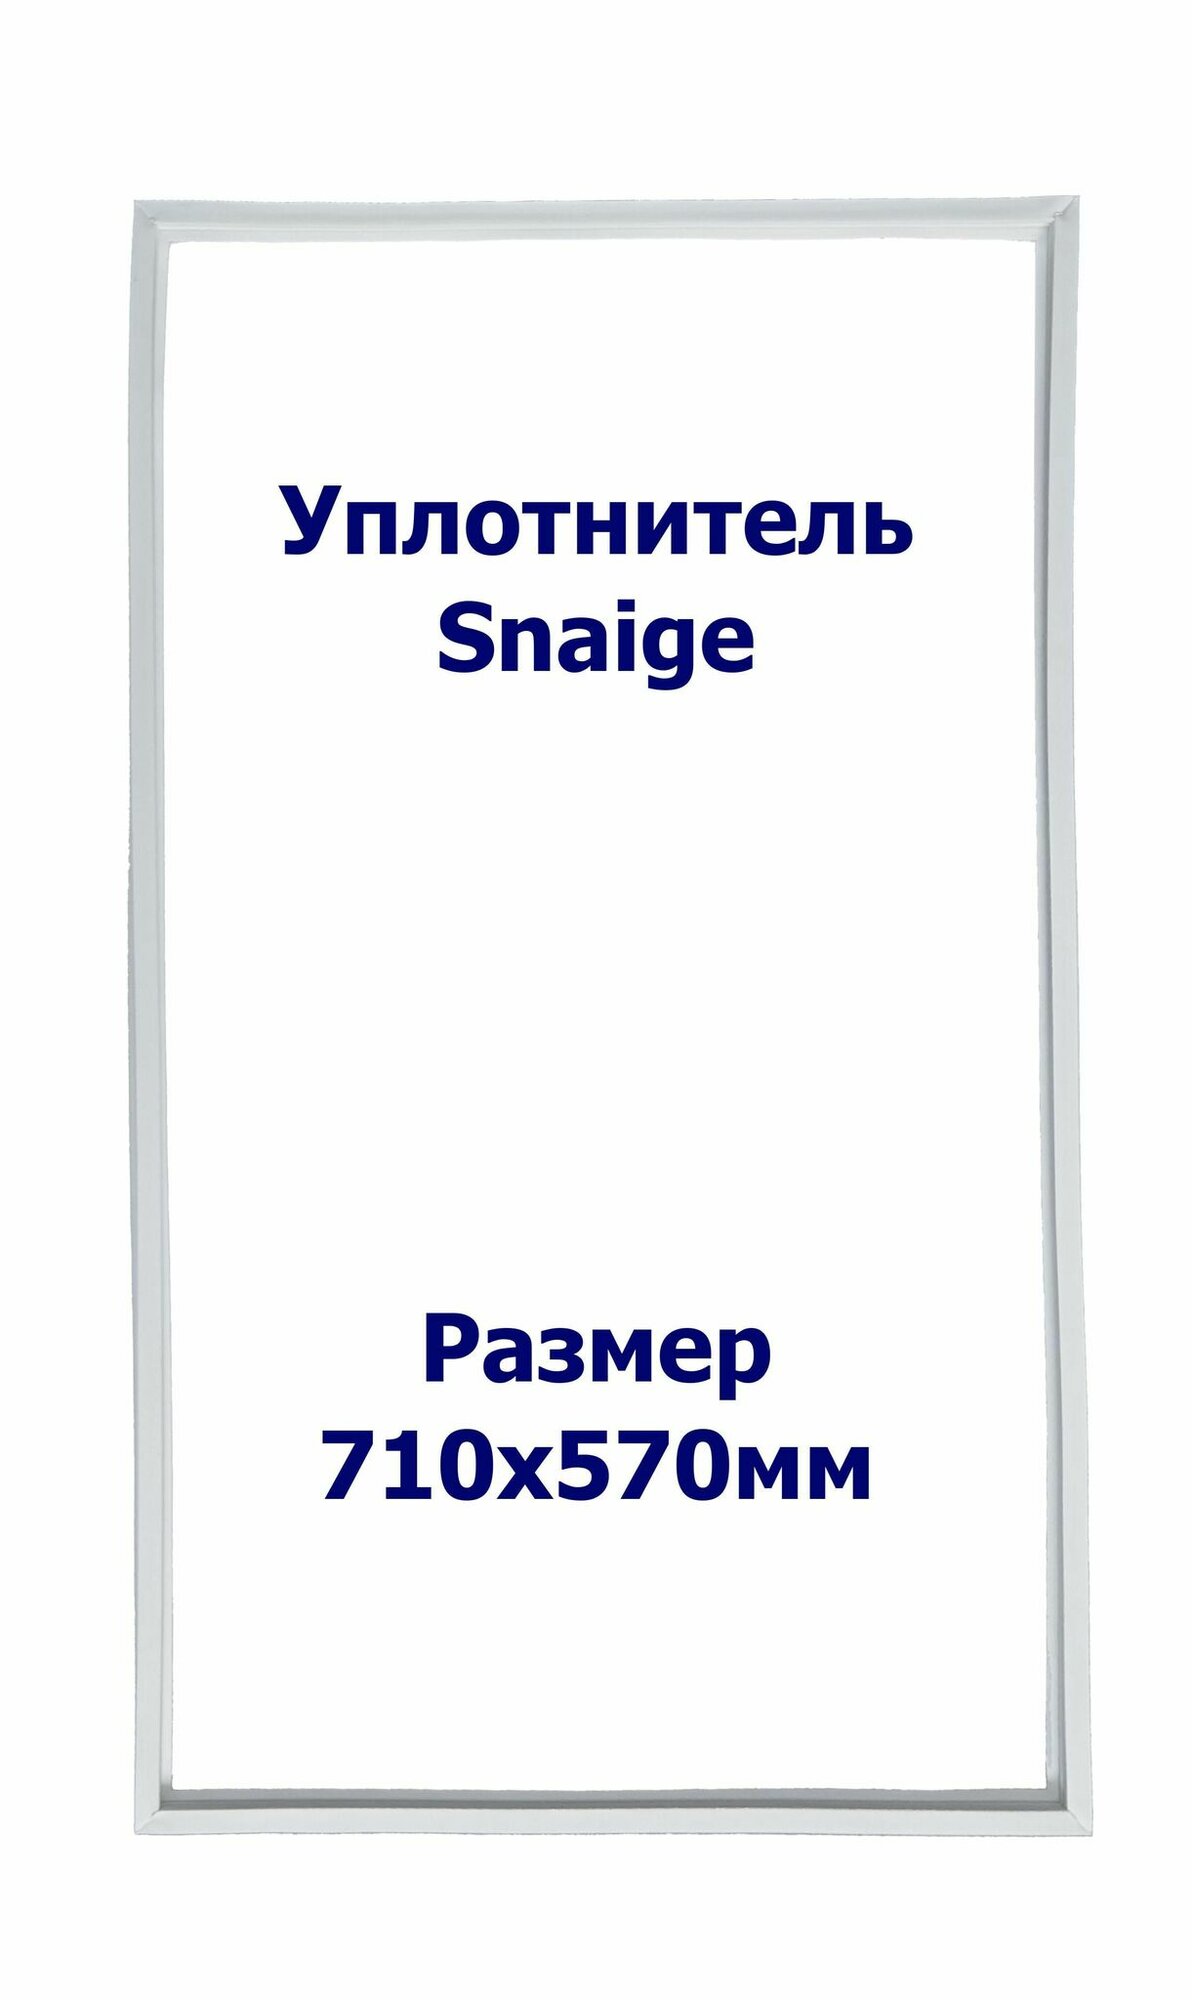 Уплотнитель Snaige RF 36. м. к, Размер - 710x570 мм. SK